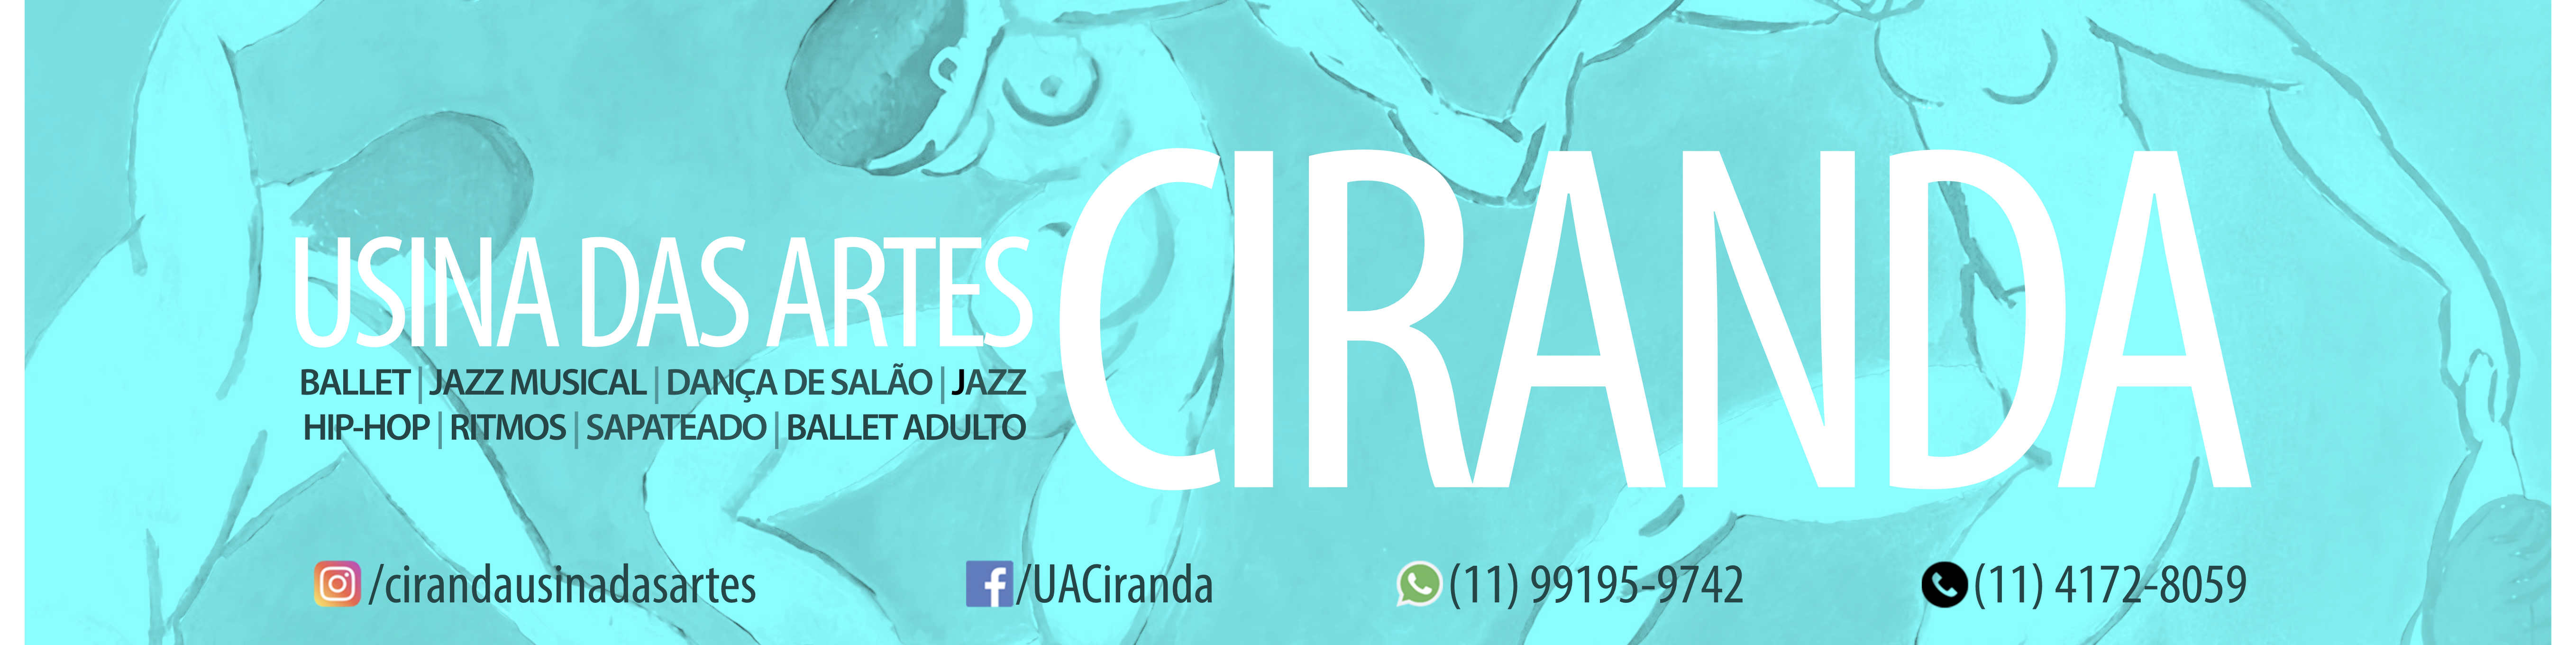 USINA DAS ARTES CIRANDA